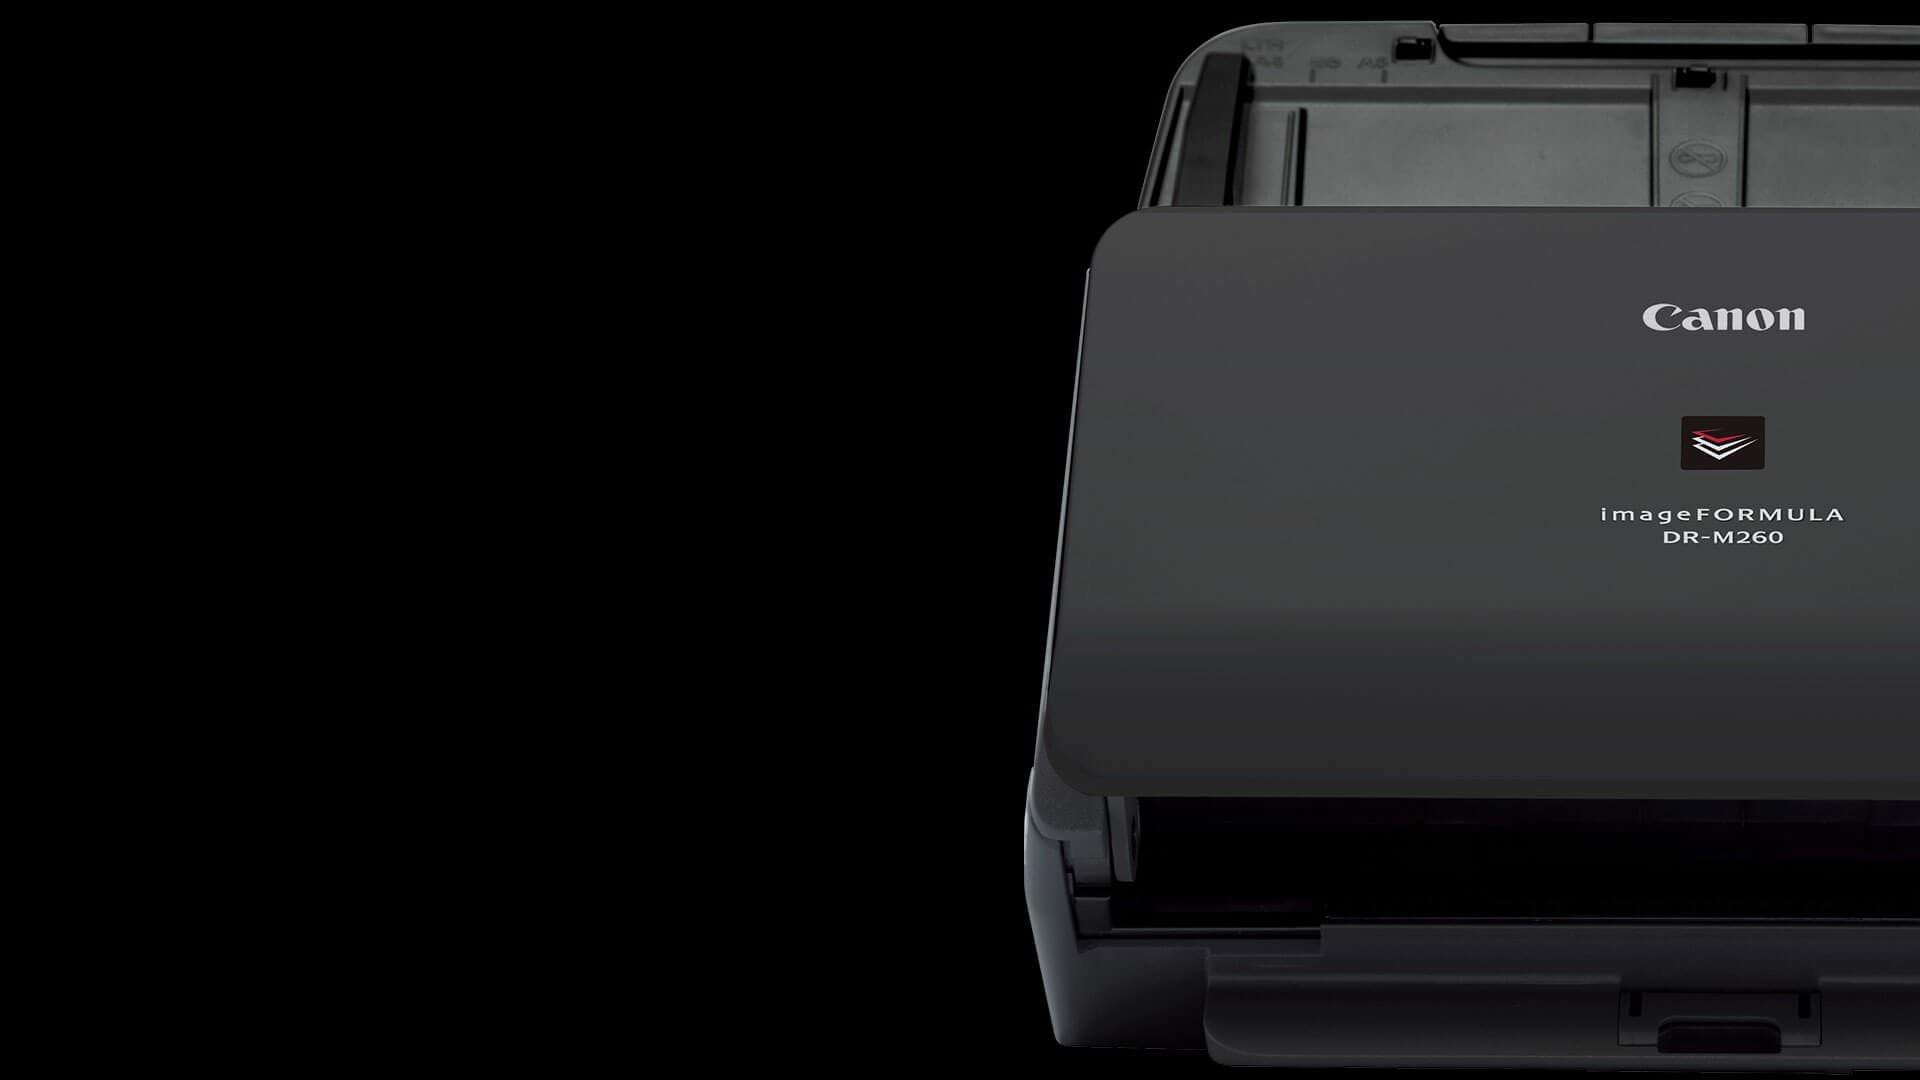 סורק דיגיטלי מקצועי Canon ImageFORMULA DR-M260 - צבע שחור אחריות לשנה ע"י היבואן הרשמי